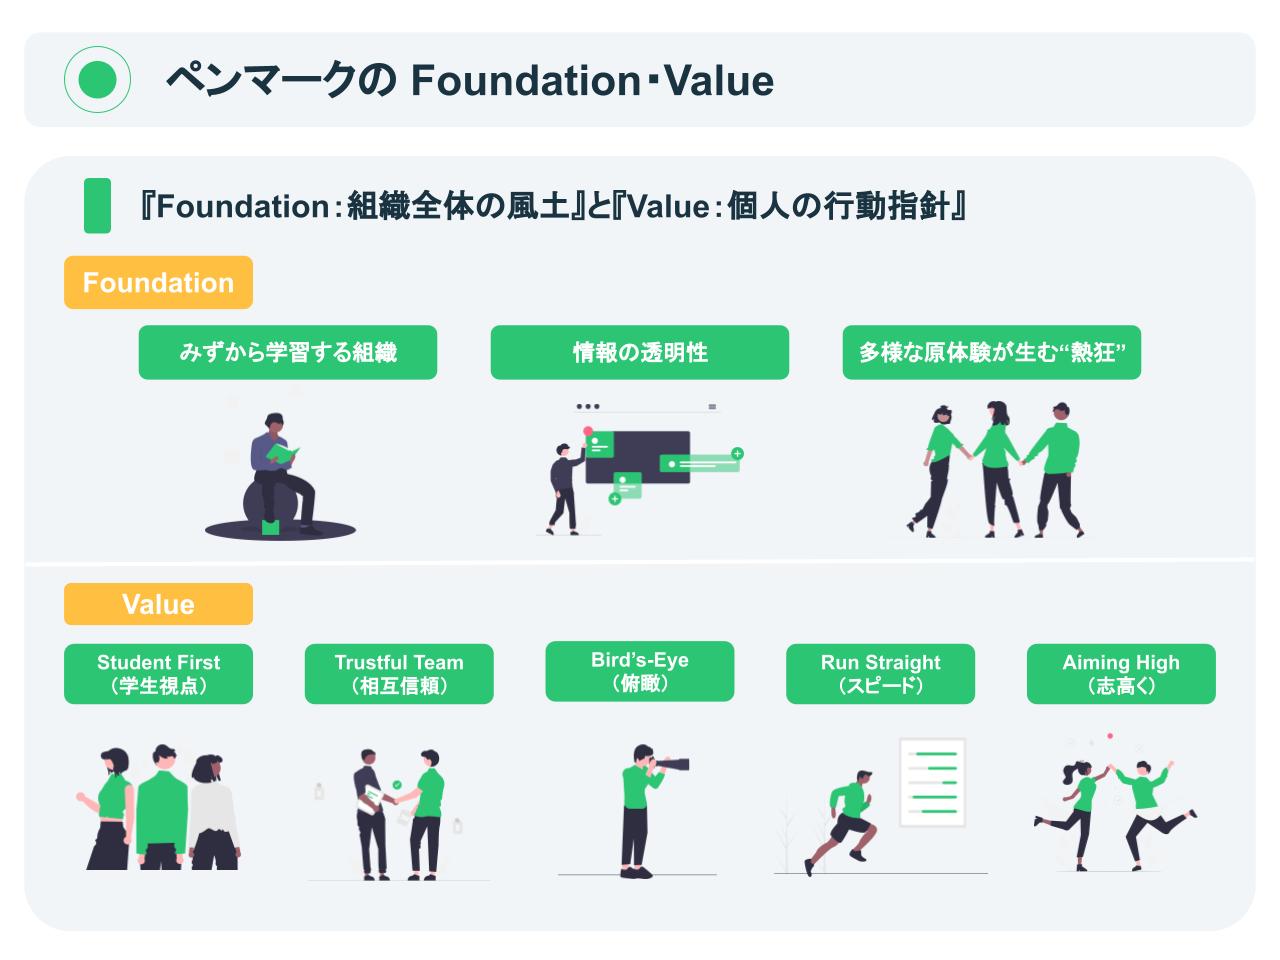 ペンマークの『Foundation：組織全体の風土』と『Value：個人の行動指針』